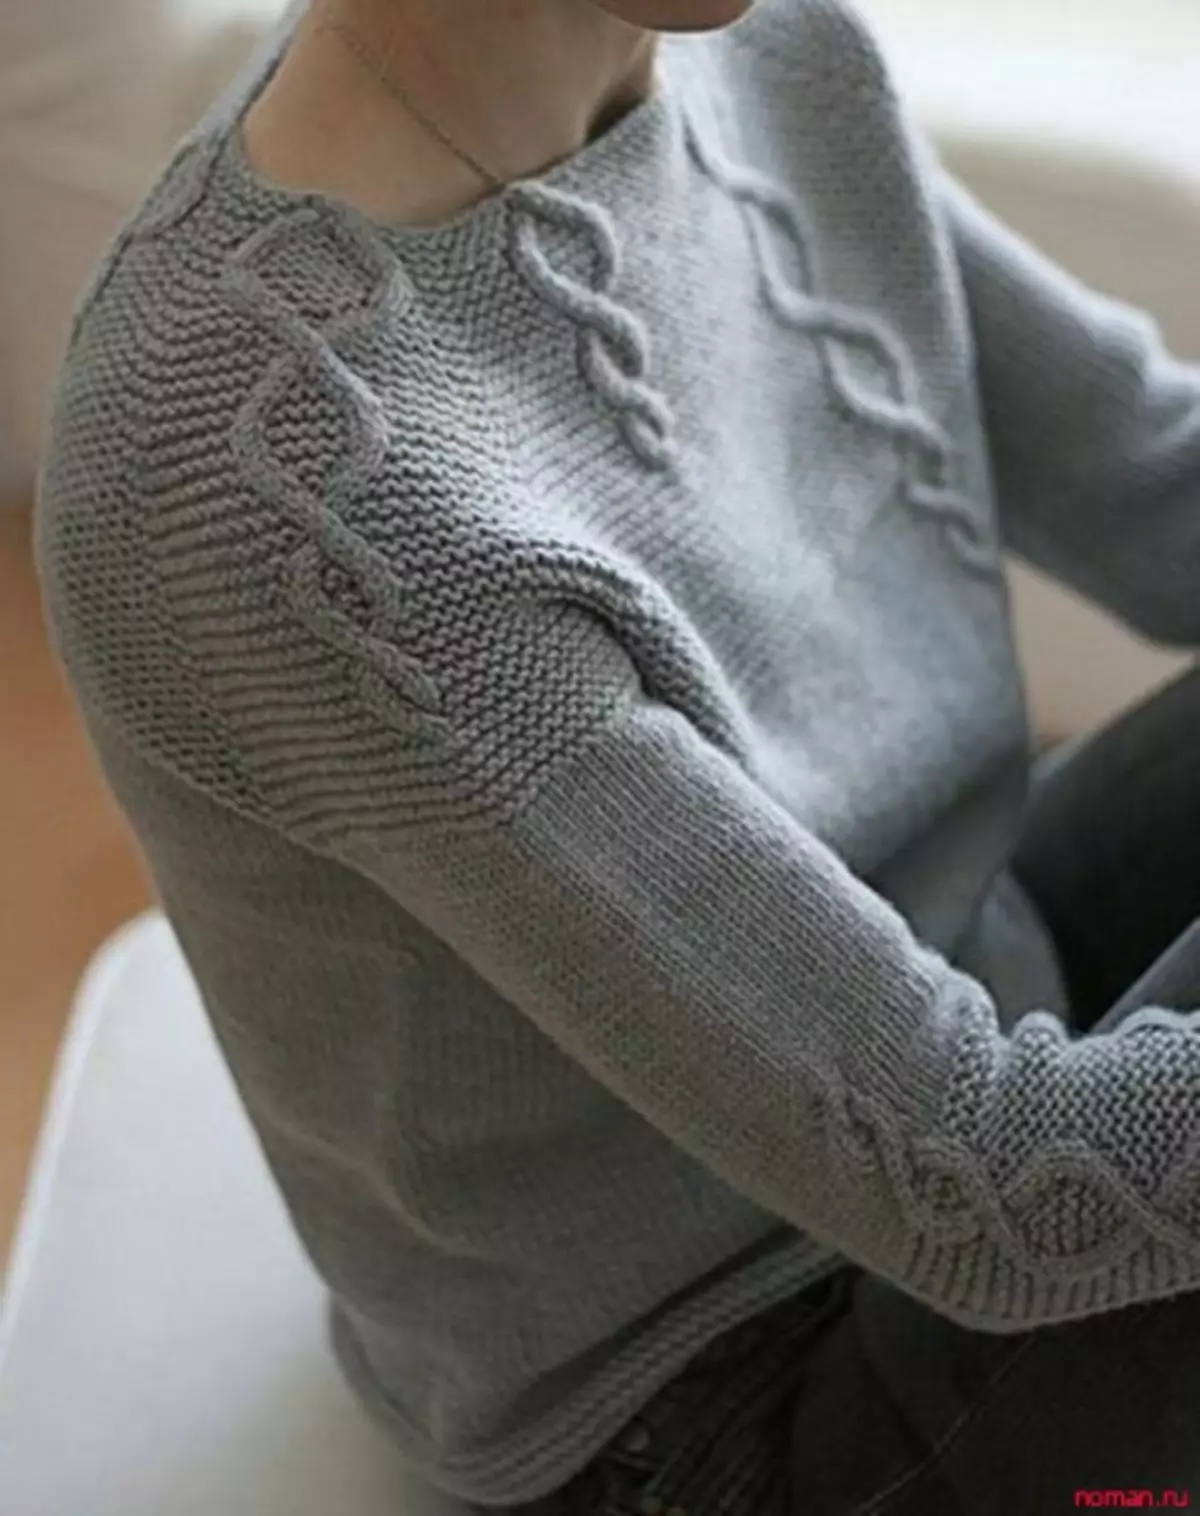 Raglan Knitting Needles: Master class knitting regulated para sa mga bata, mga scheme at paglalarawan ng magandang modelo para sa mga kababaihan